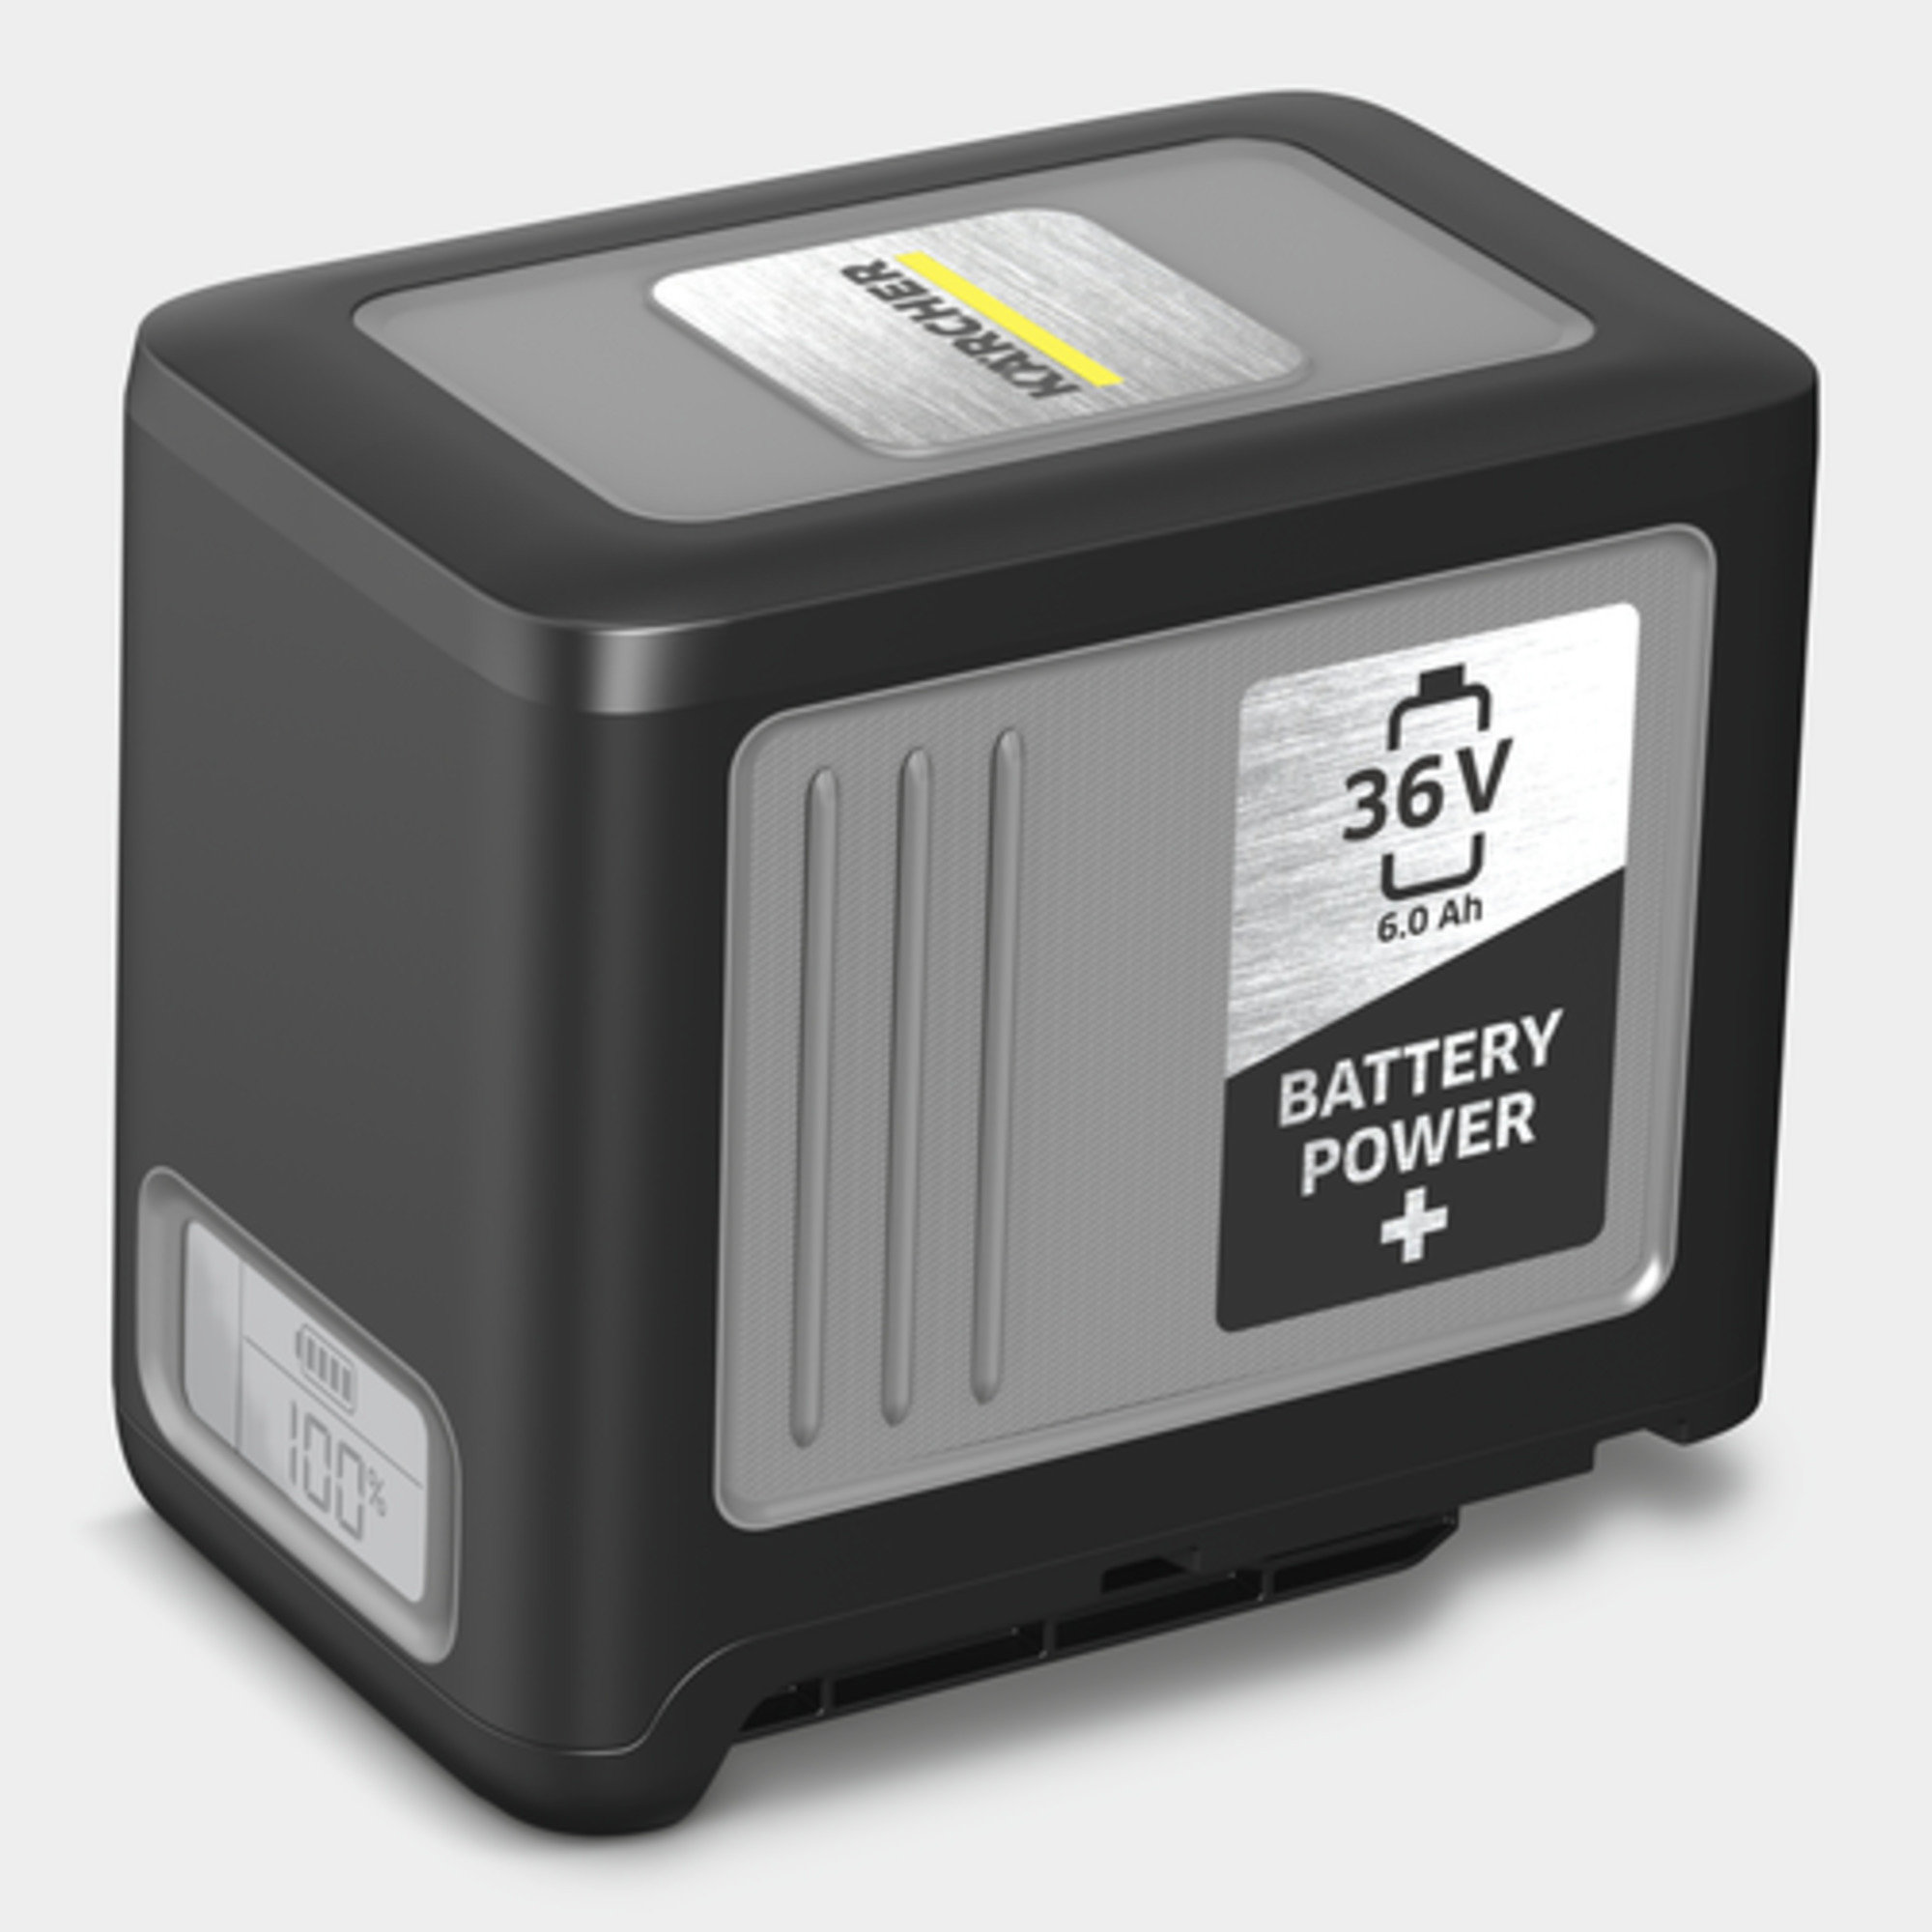  Batéria Battery Power+ 36/60: Systém 36 V vymeniteľných batérií Battery Power Kärcher